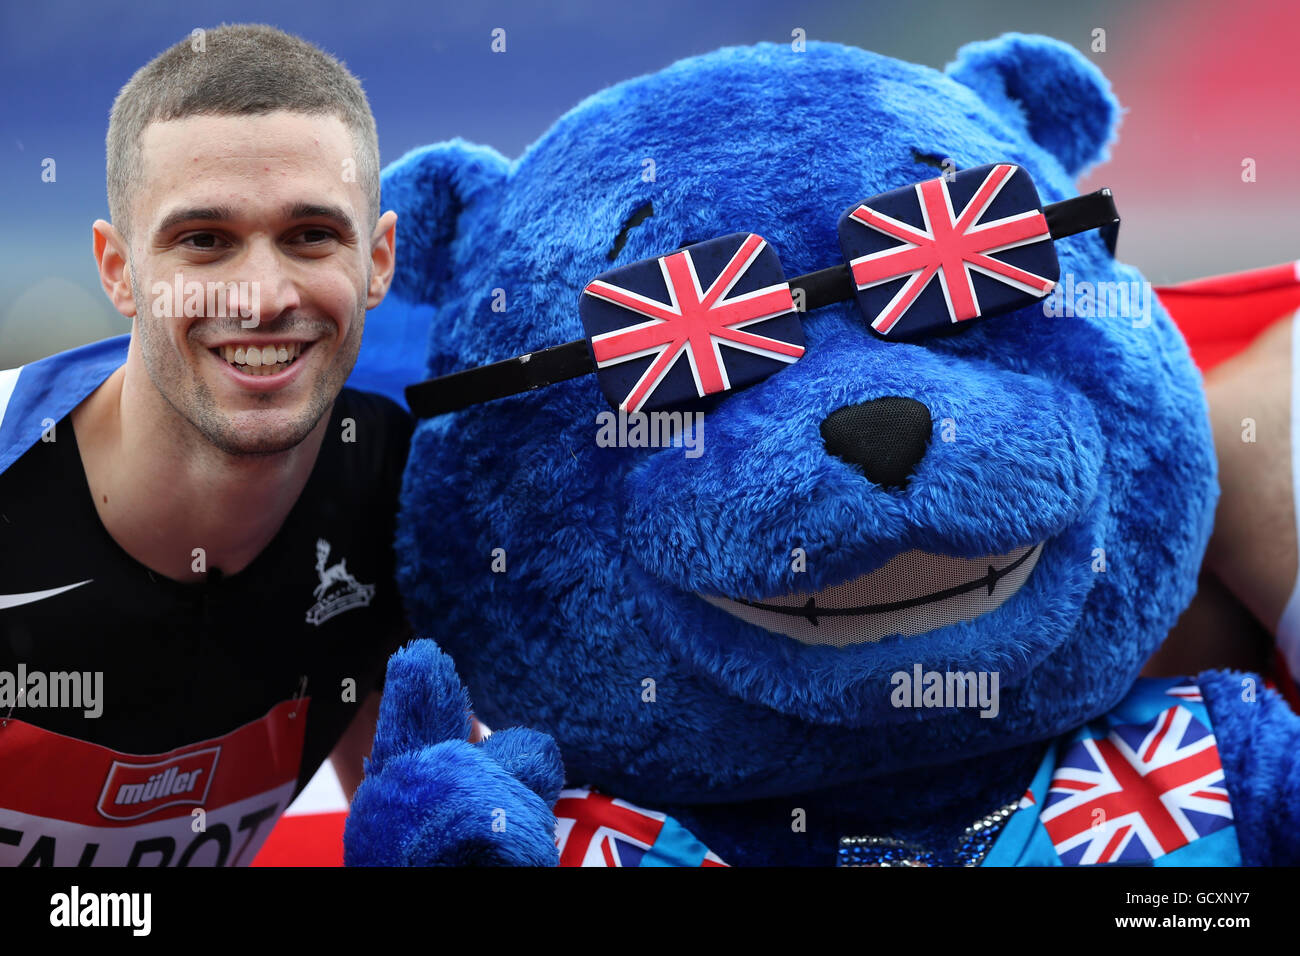 Danny TALBOT posant avec mascotte BritBear Athlétisme britannique après le 200m masculin, 2016 finale championnat britannique Alexander Stadium, Birmingham UK. Banque D'Images